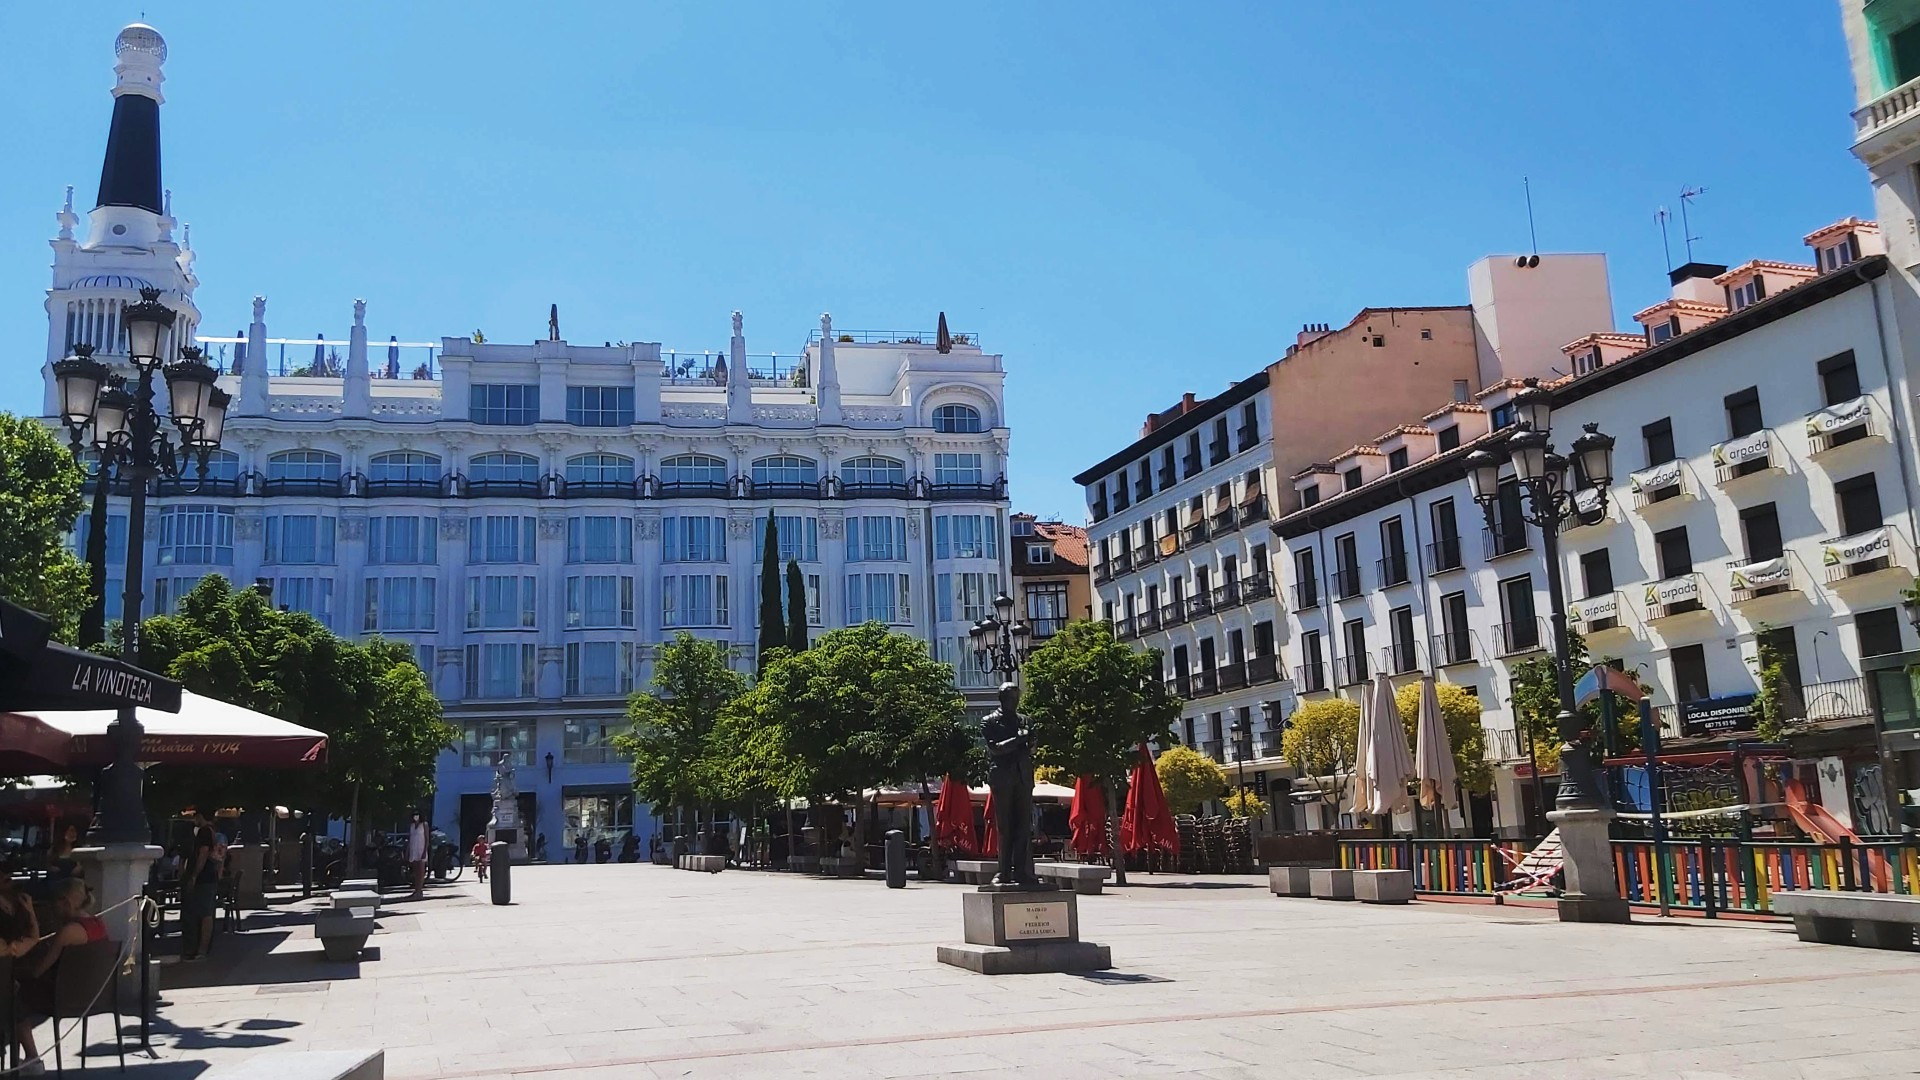 Ple de bars de tapes i terrasses, el Barri de Las Letras és el districte literari de Madrid i un dels més propers al Triángulo del Arte i El Prado.